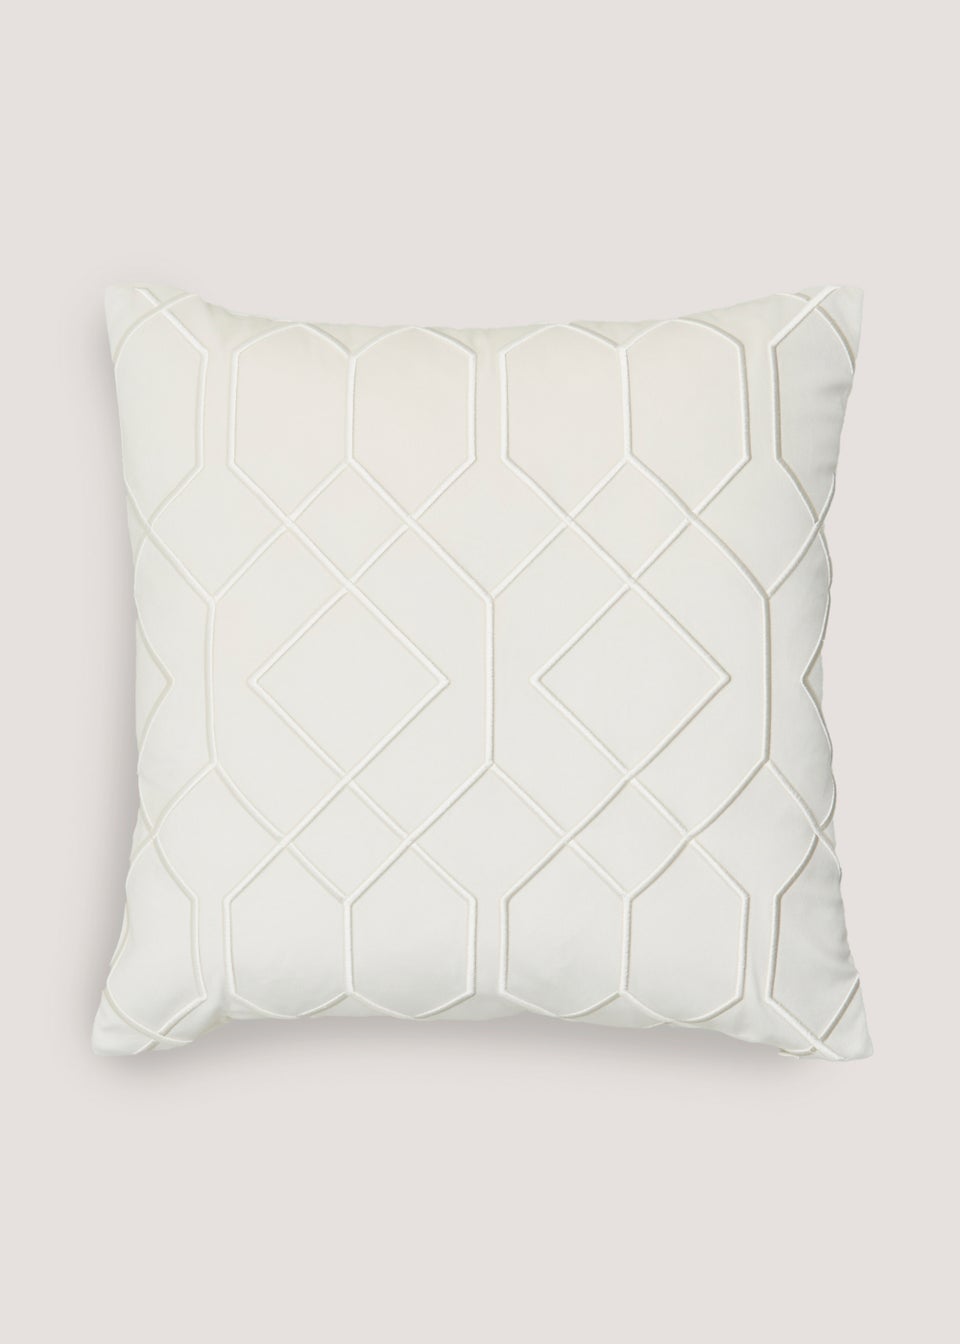 Cream Chunky Embroidery Cushion (43cm x 43cm)